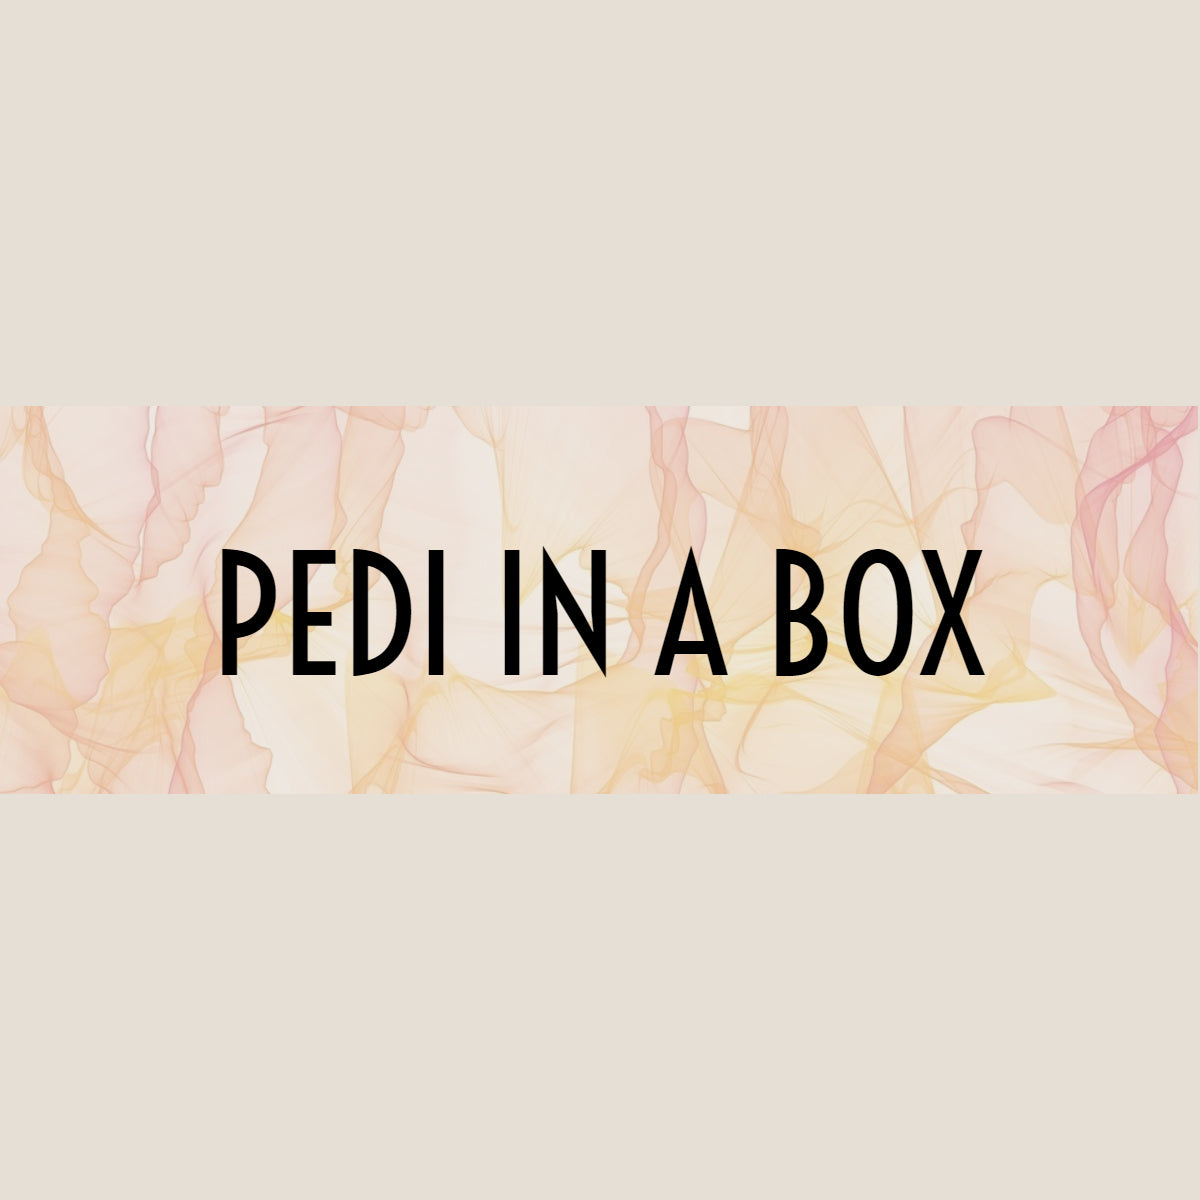 Pedi in a box